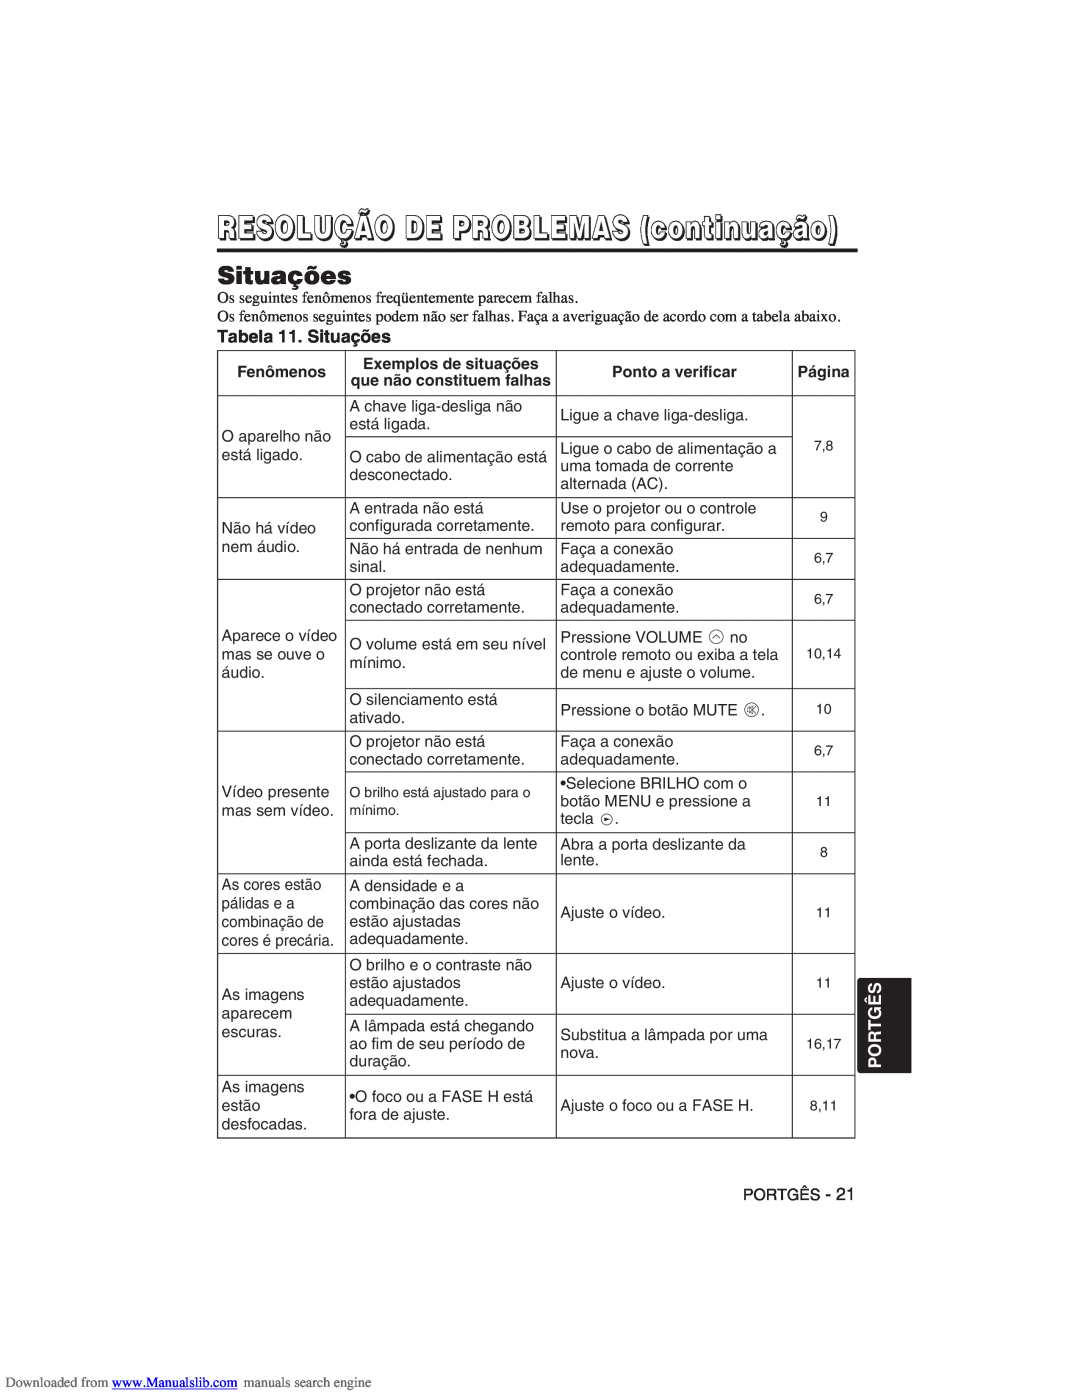 Hitachi CP-X275W user manual Tabela 11. Situações, RESOLUÇÃO DE PROBLEMAS continuação, Portgês 